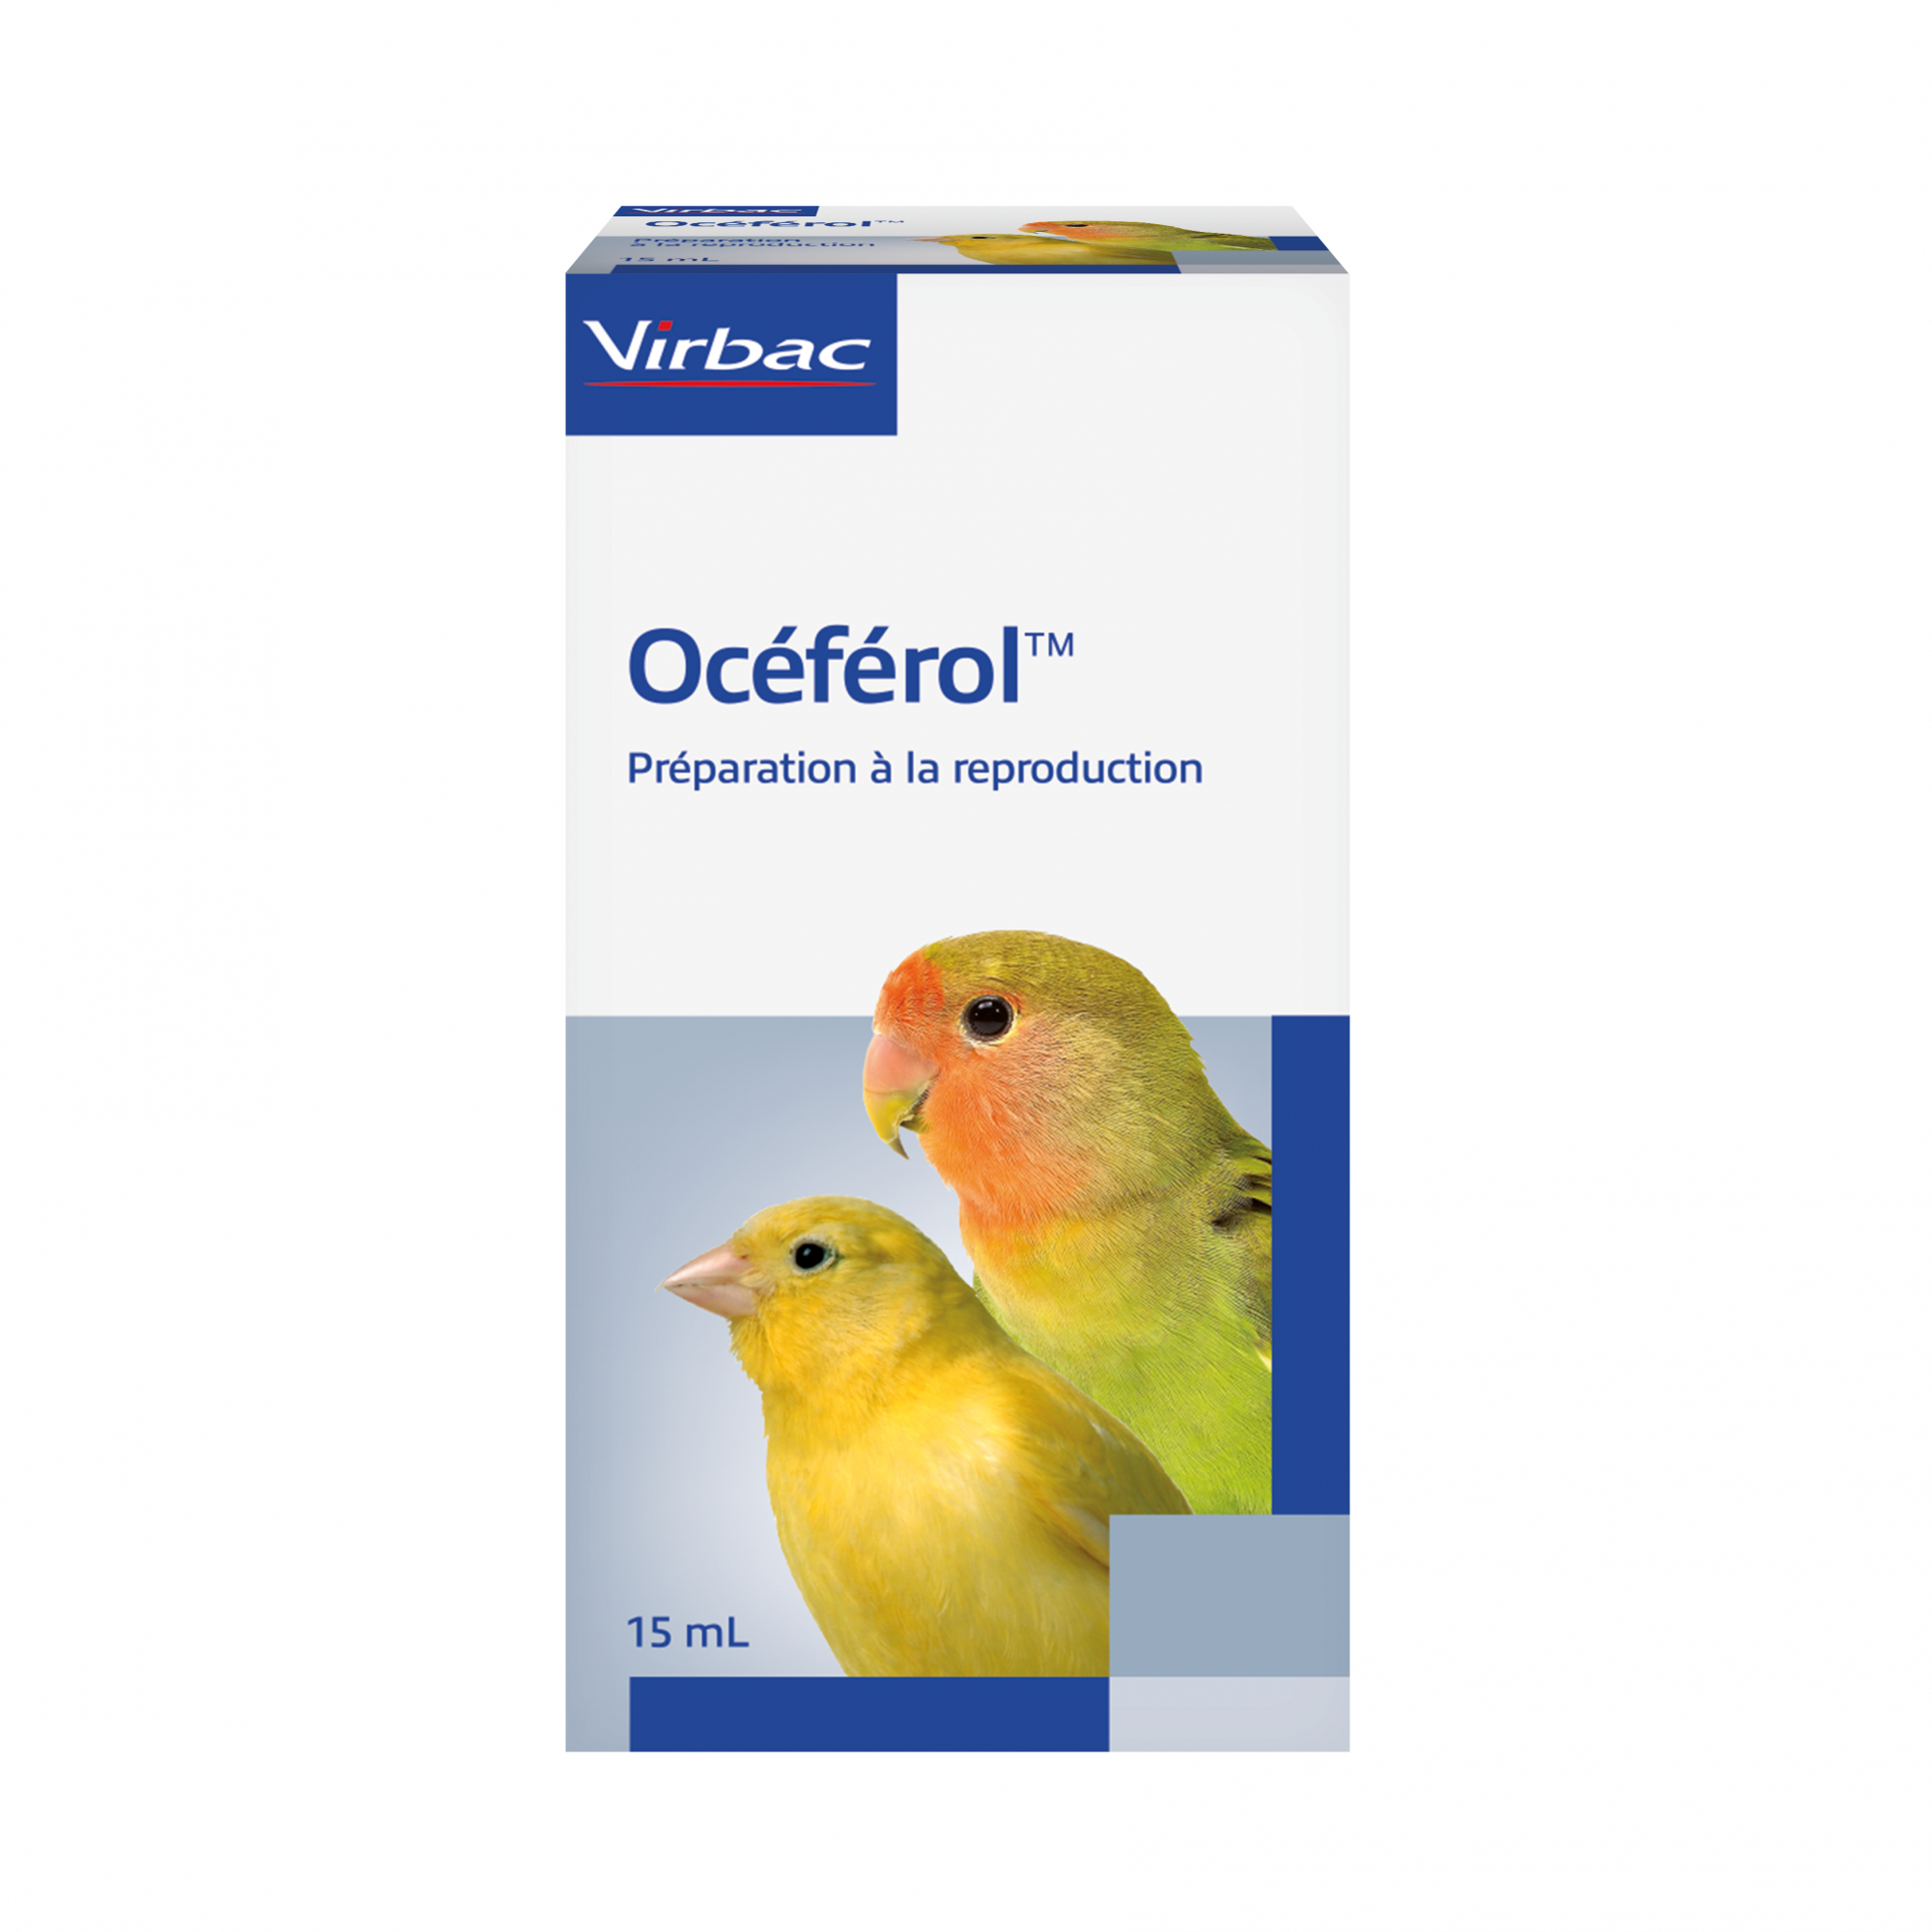 Virbac Oceferol Vitamina E para a reprodução das aves